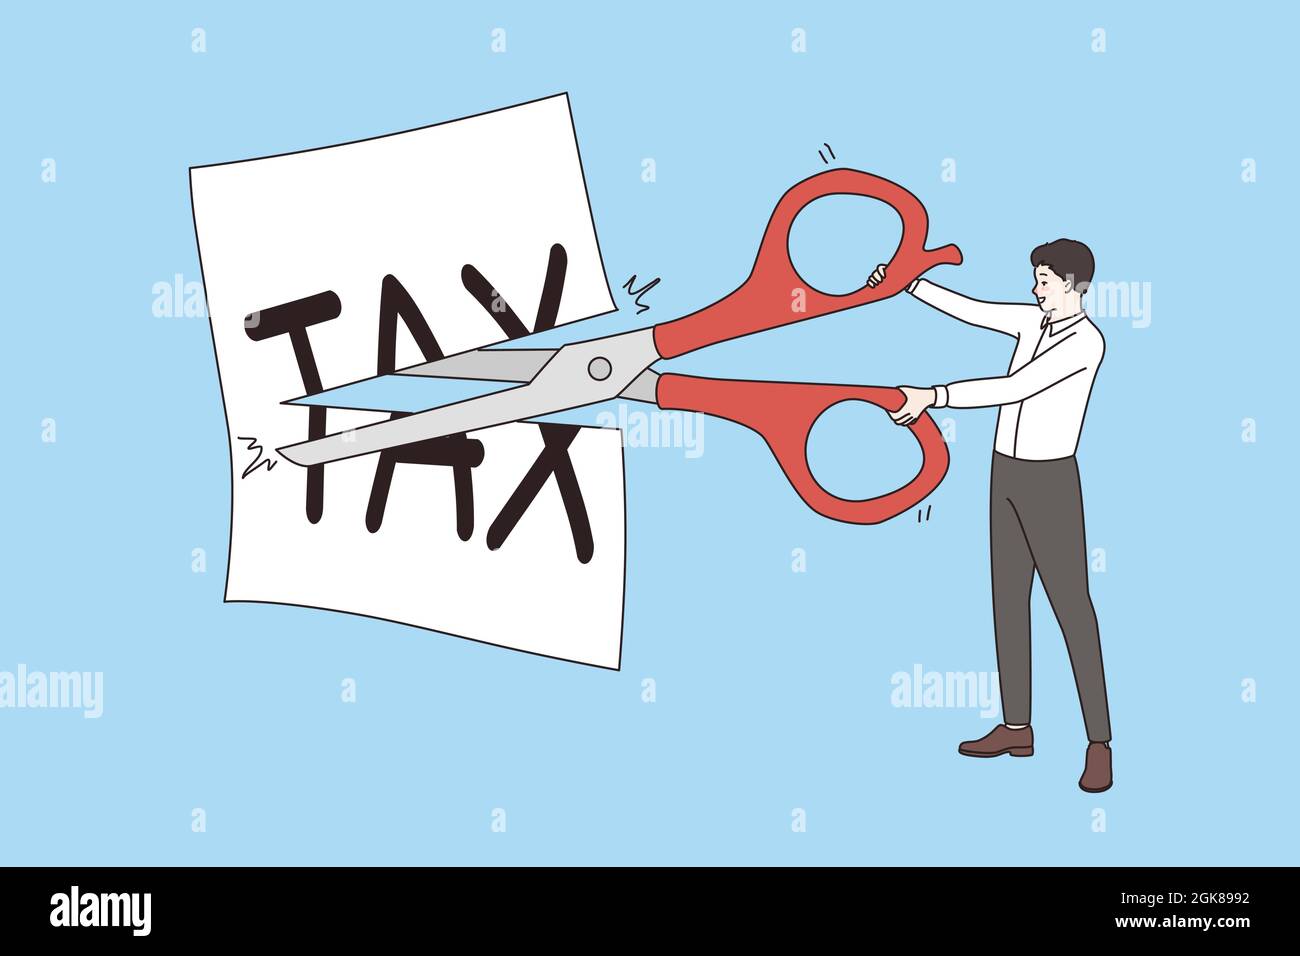 Réduction et réduction de l'impôt. Homme d'affaires debout avec des ciseaux  réduisant l'impôt écrit sur le papier blanc réduisant faisant moins  d'illustration vectorielle Image Vectorielle Stock - Alamy